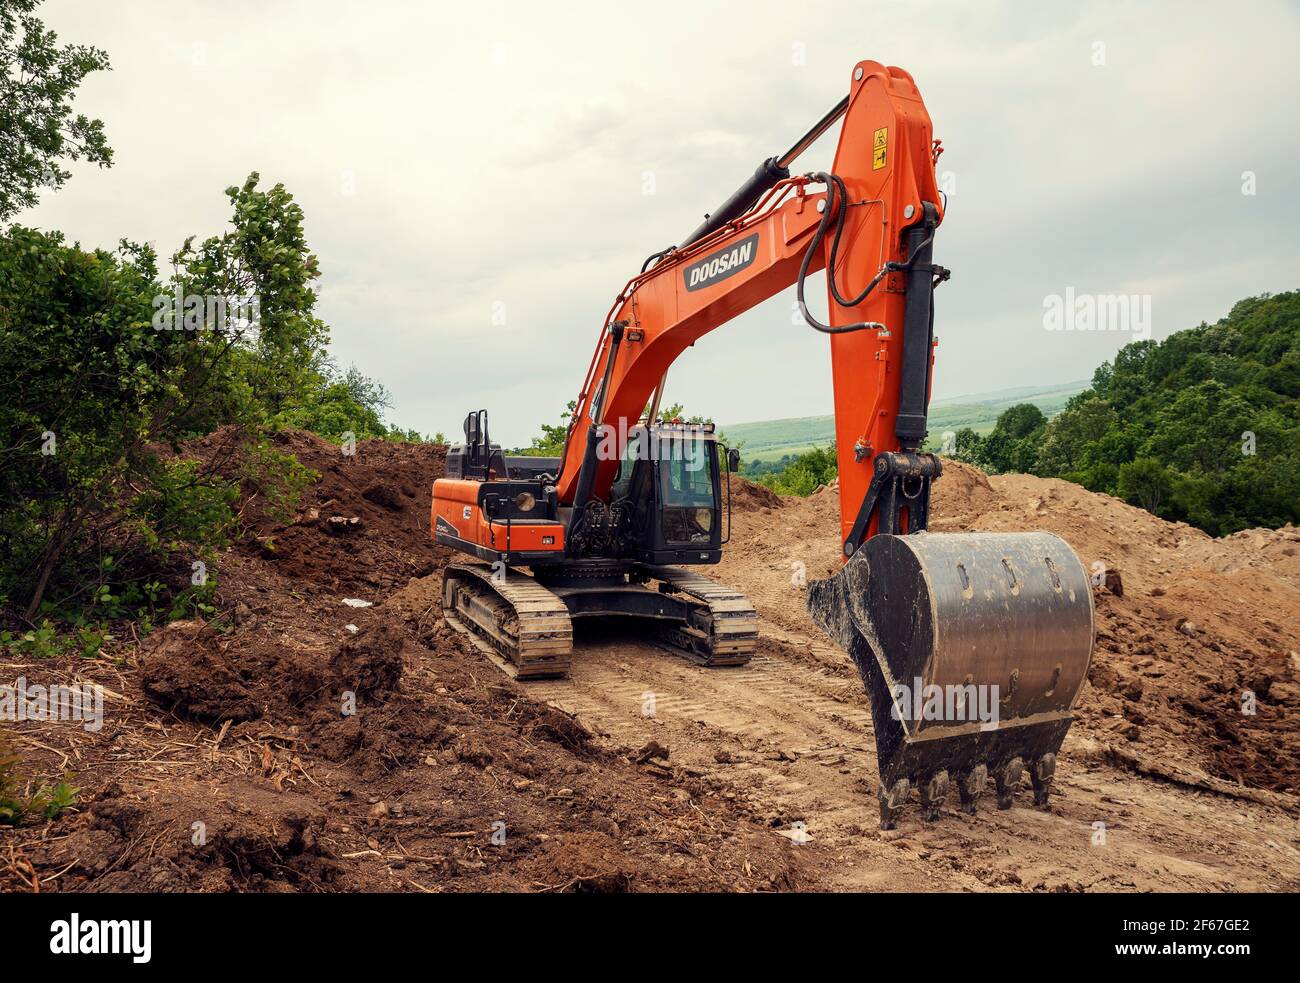 Bulgaria, Radanovo, 20 MAGGIO 2020: Un escavatore a catena arancione che sgombrano il terreno su un pendio durante la costruzione del gasdotto South Stream Foto Stock